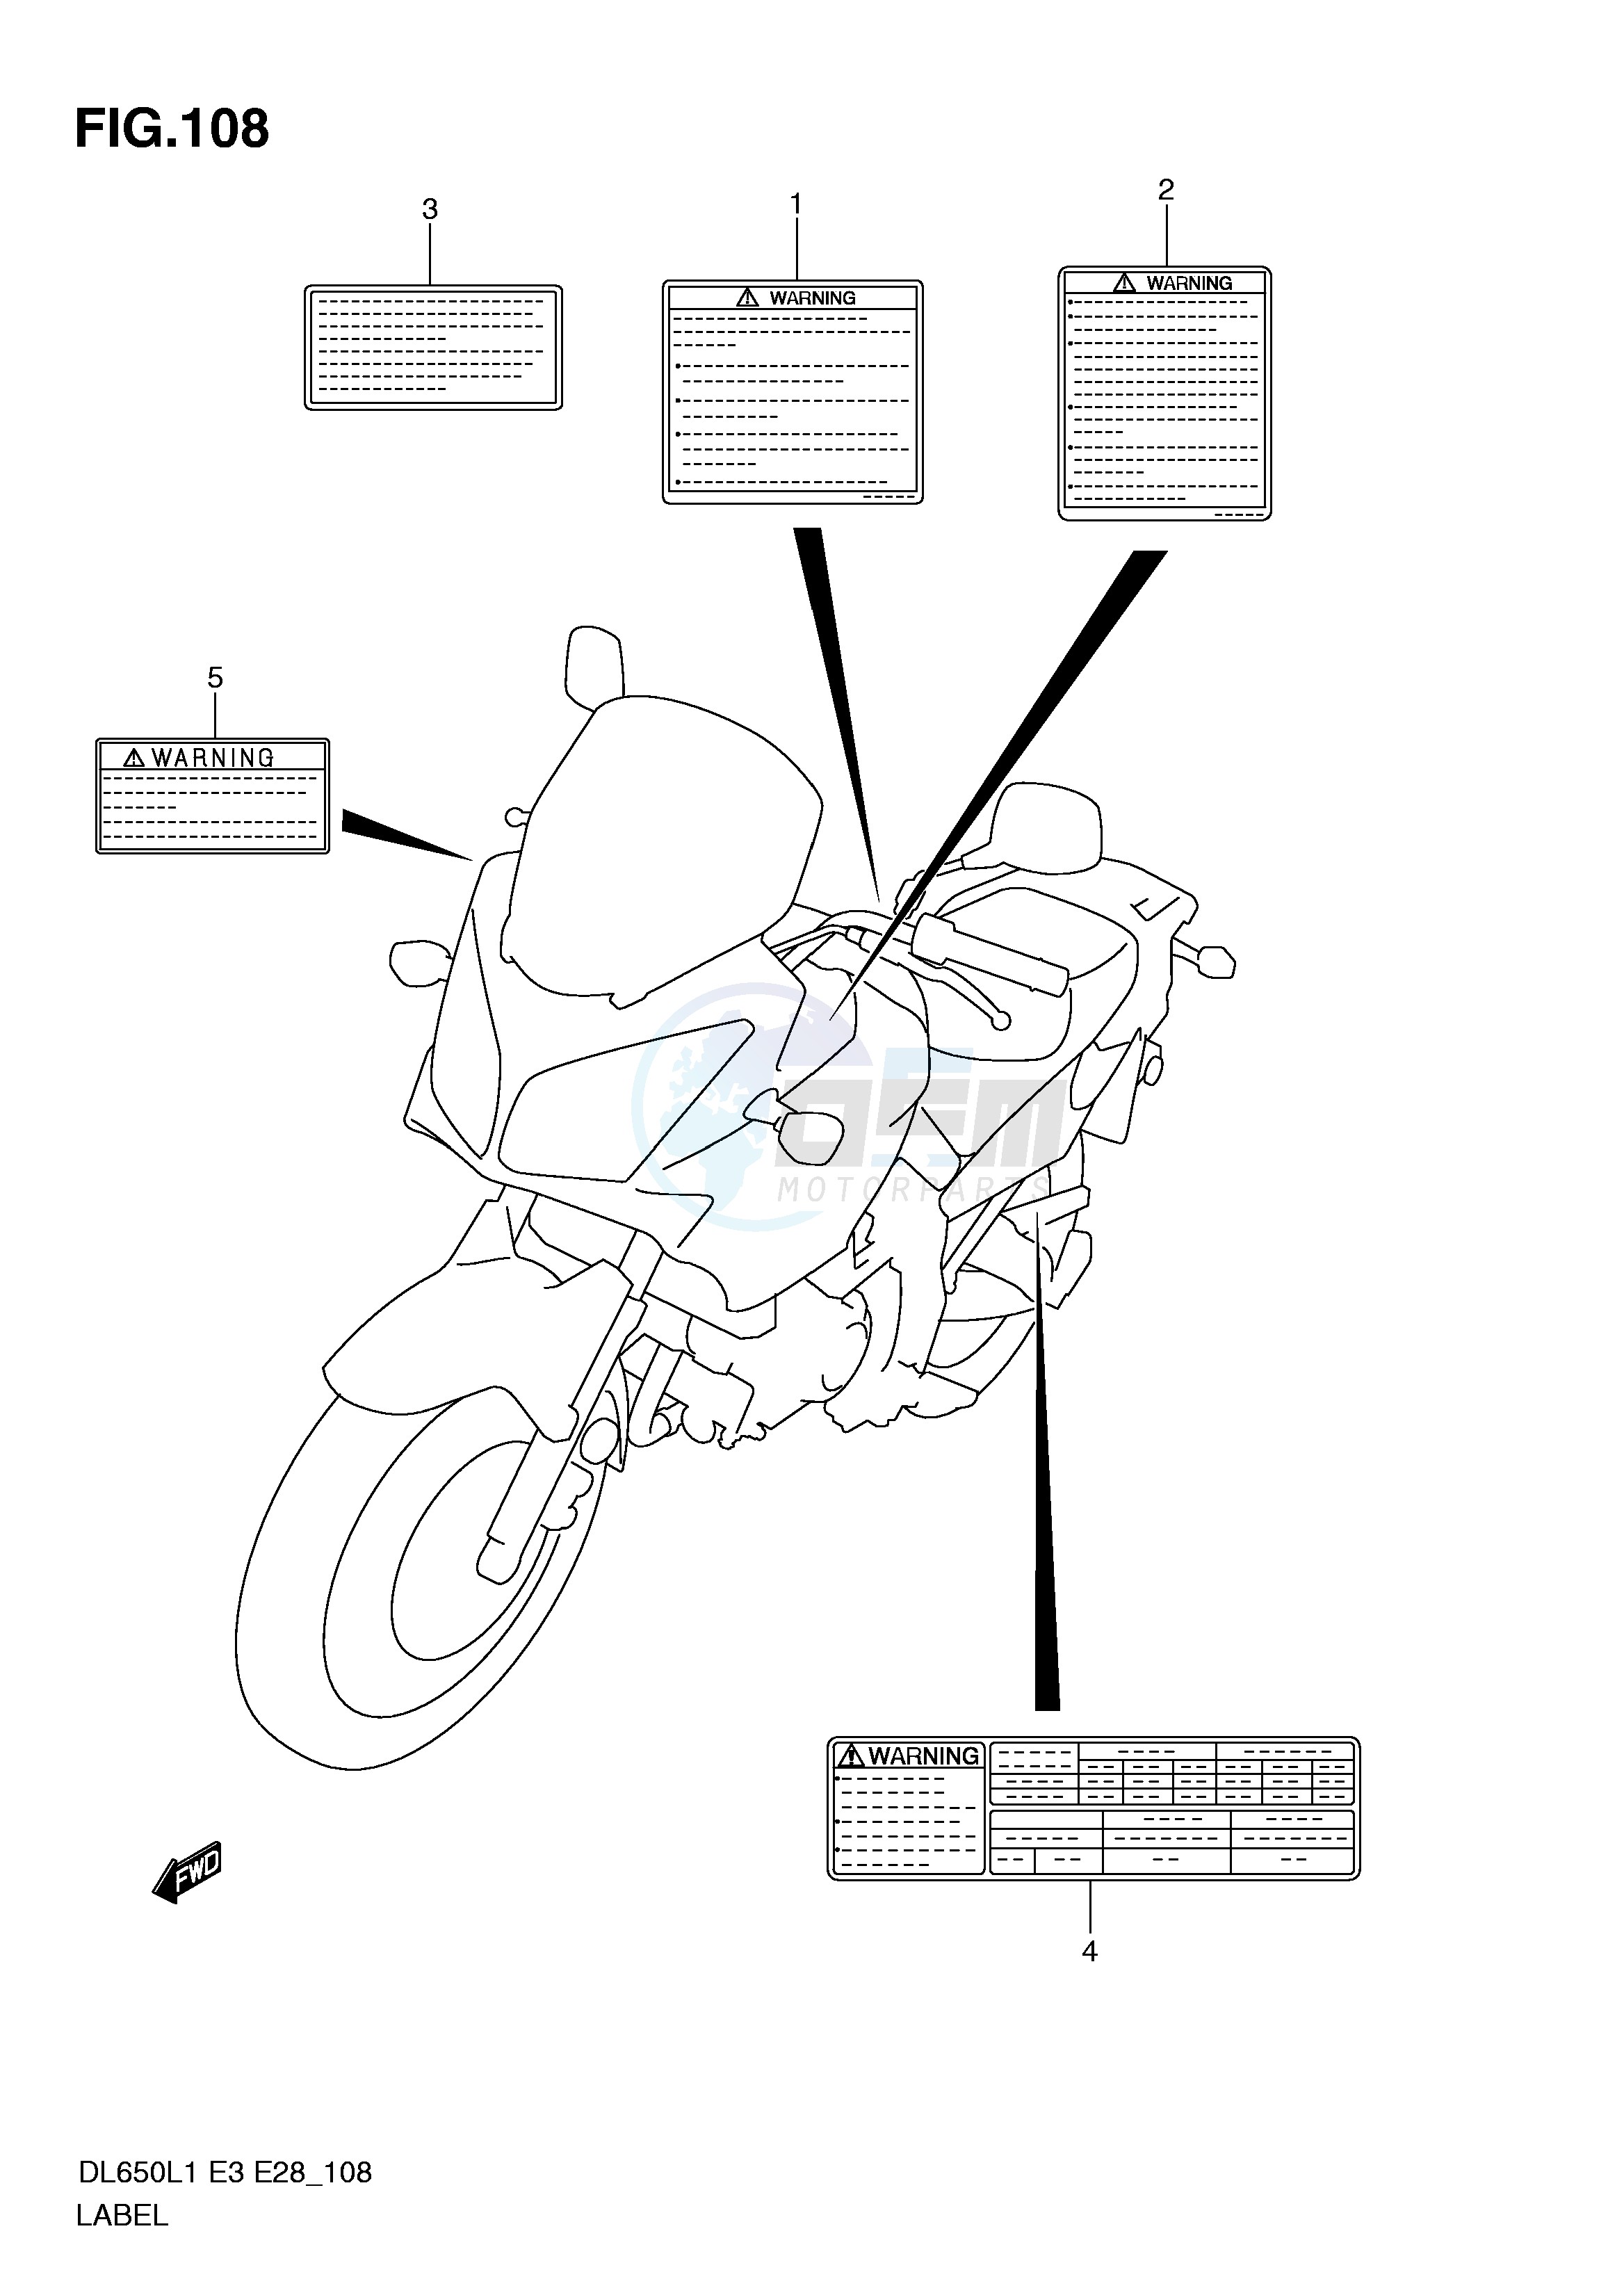 LABEL (DL650L1 E3) blueprint